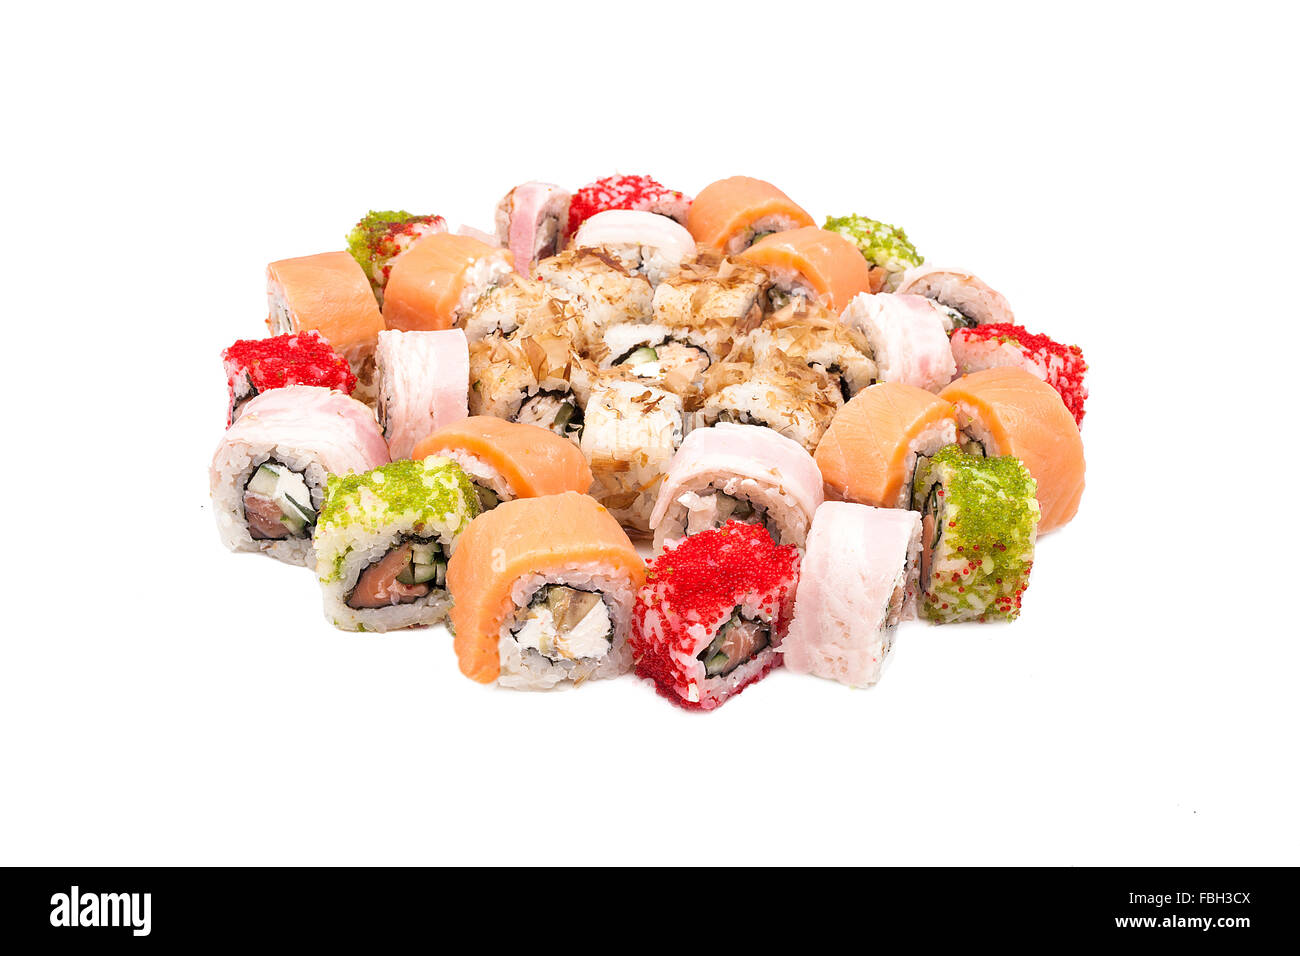 Sushi on the white background Stock Photo